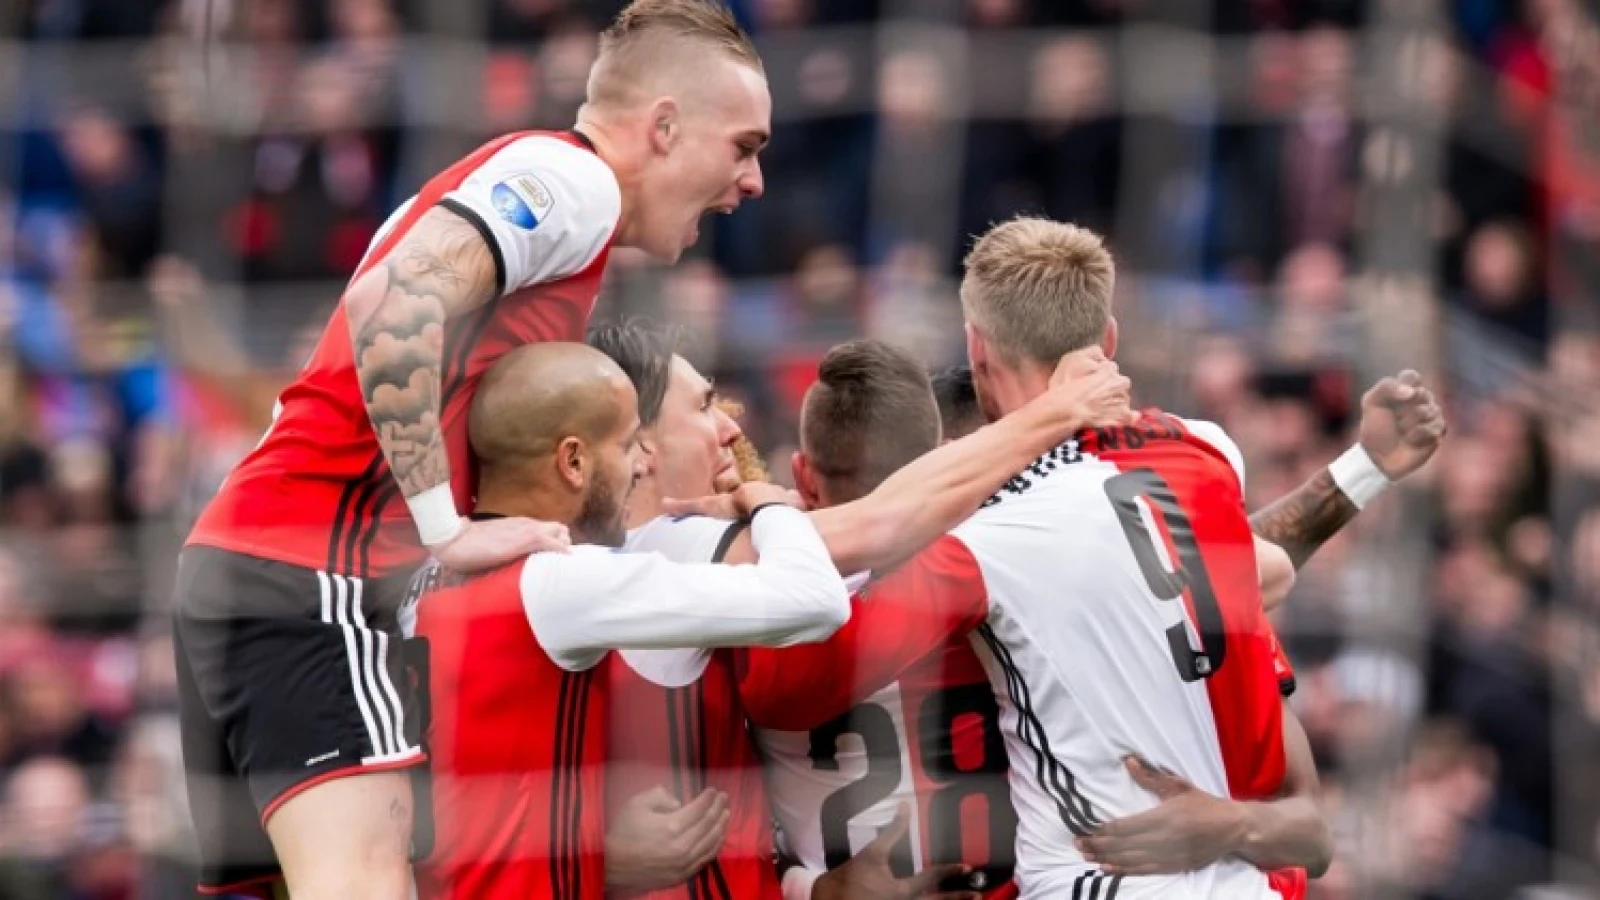 Waarschuwing voor Feyenoord: 'Haal je het net niet, kun je niks'